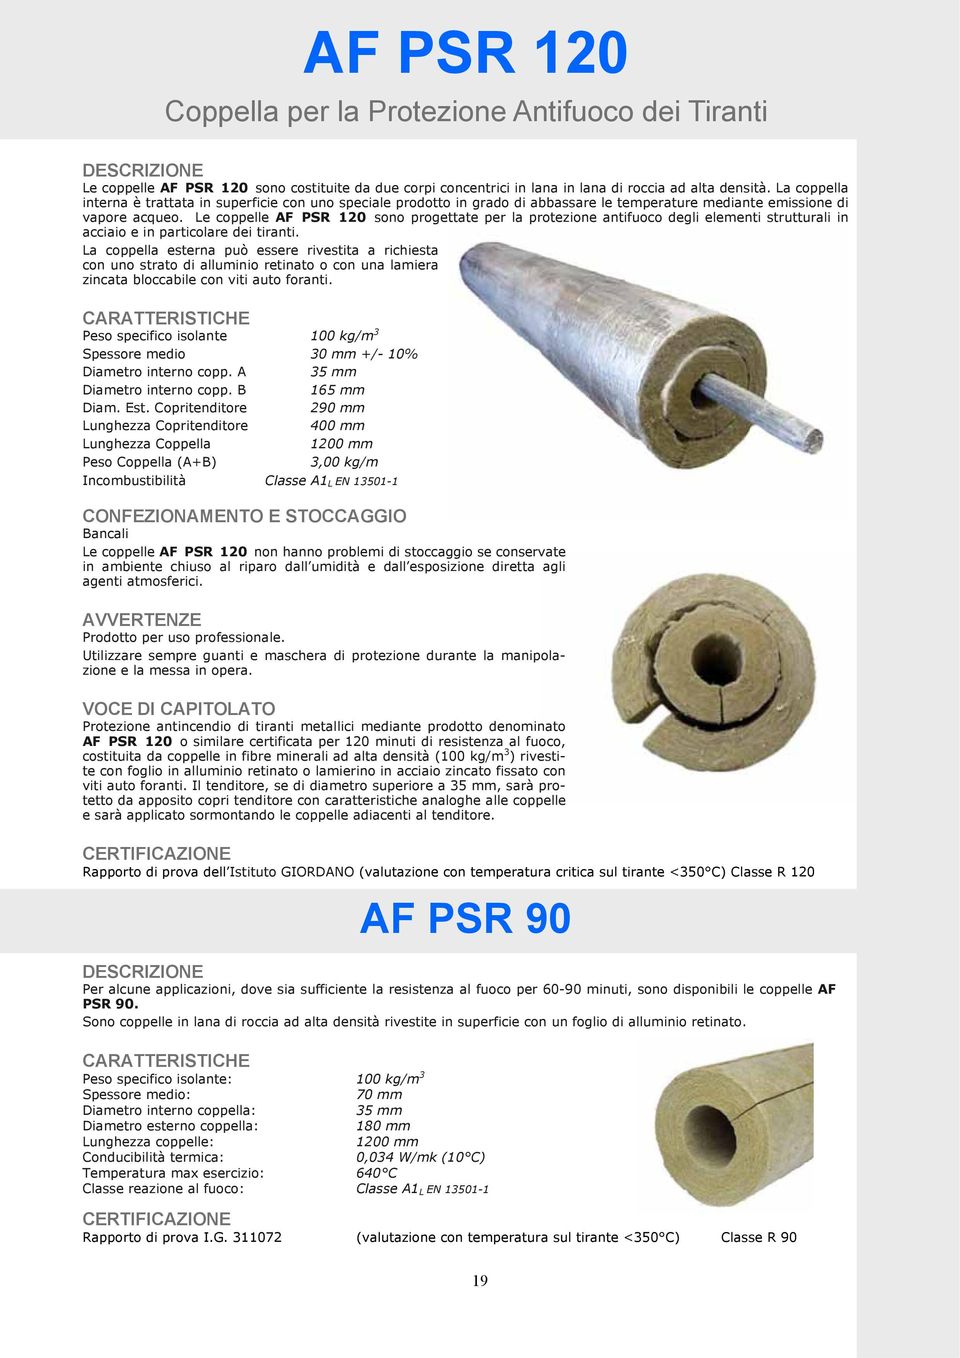 Le coppelle AF PSR 120 sono progettate per la protezione antifuoco degli elementi strutturali in acciaio e in particolare dei tiranti.